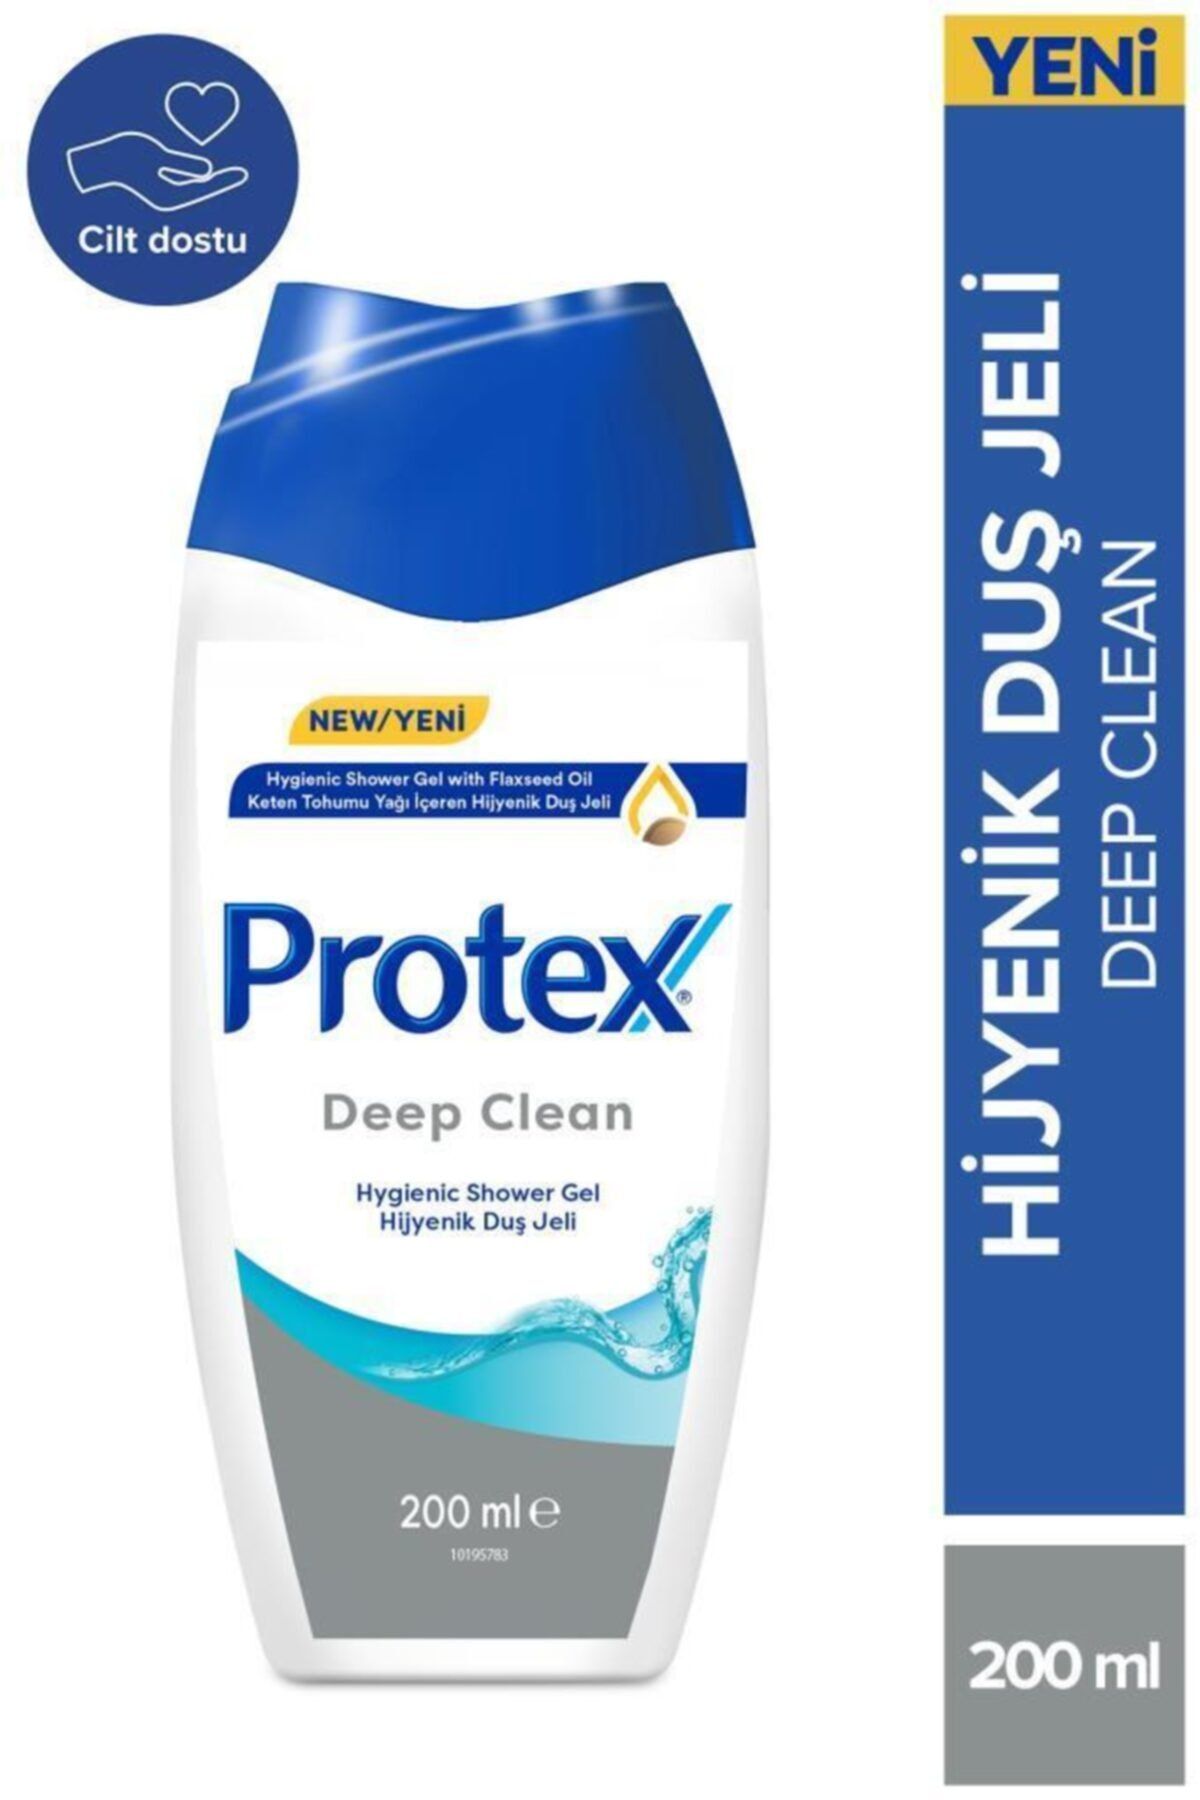 Protex Deep Clean Keten Tohumu Yağı İçeren Hijyenik Duş Jeli 200 ml